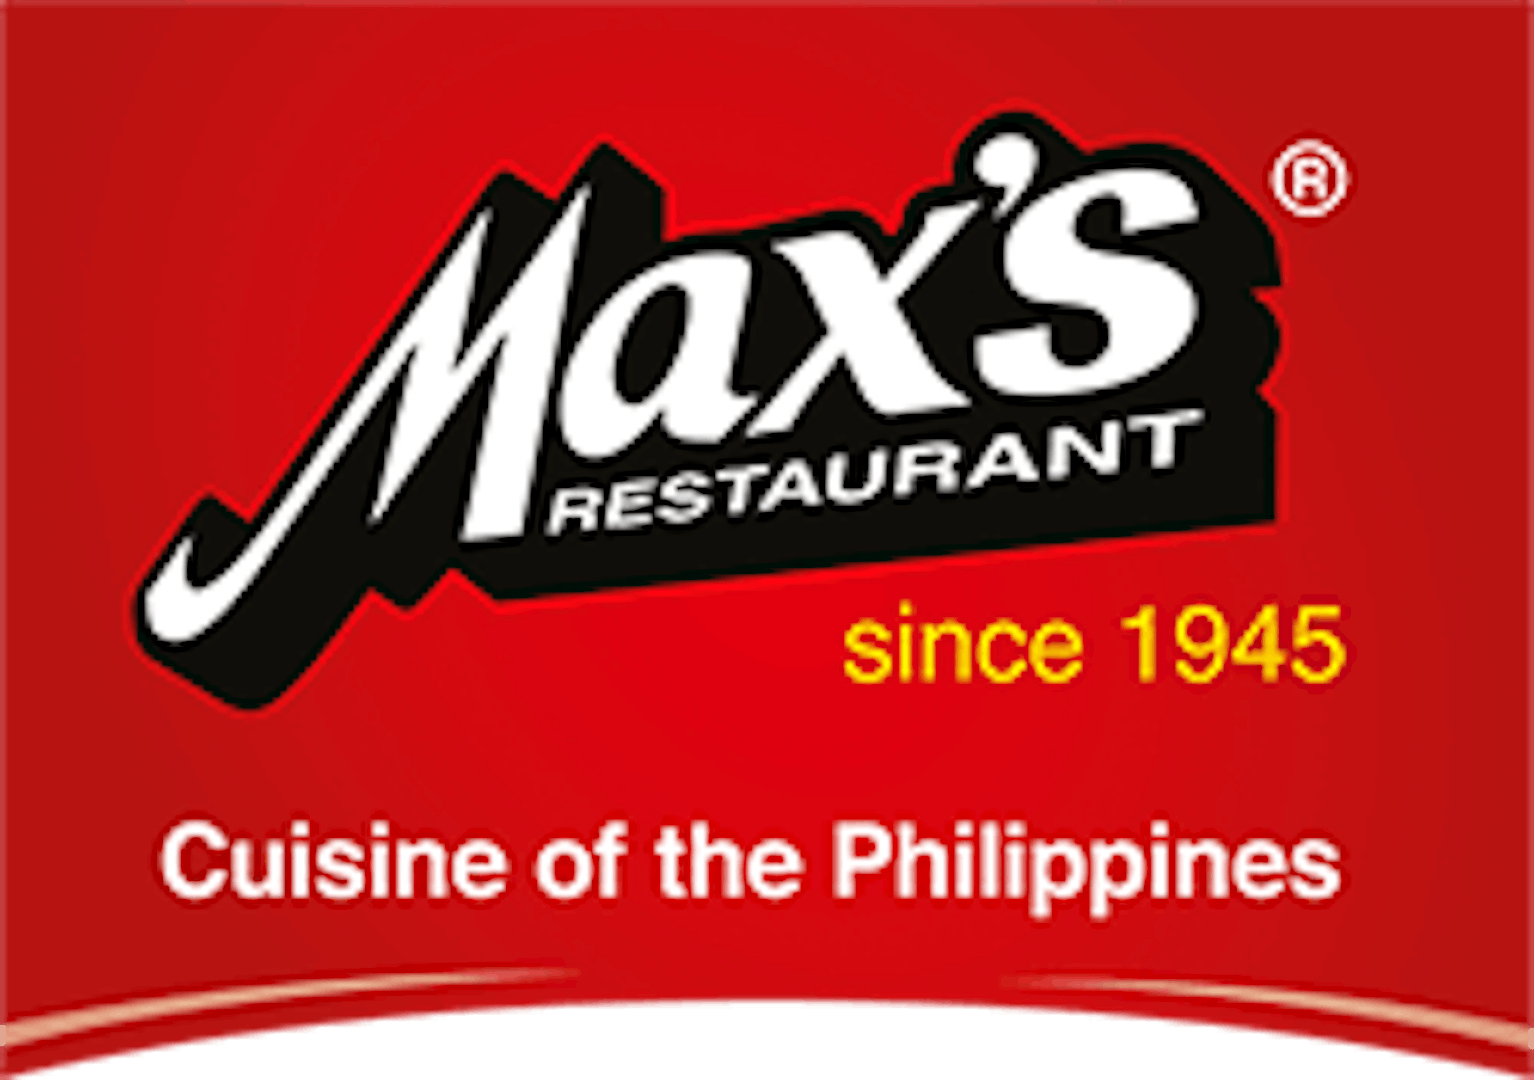 www.maxsmilpitas.com